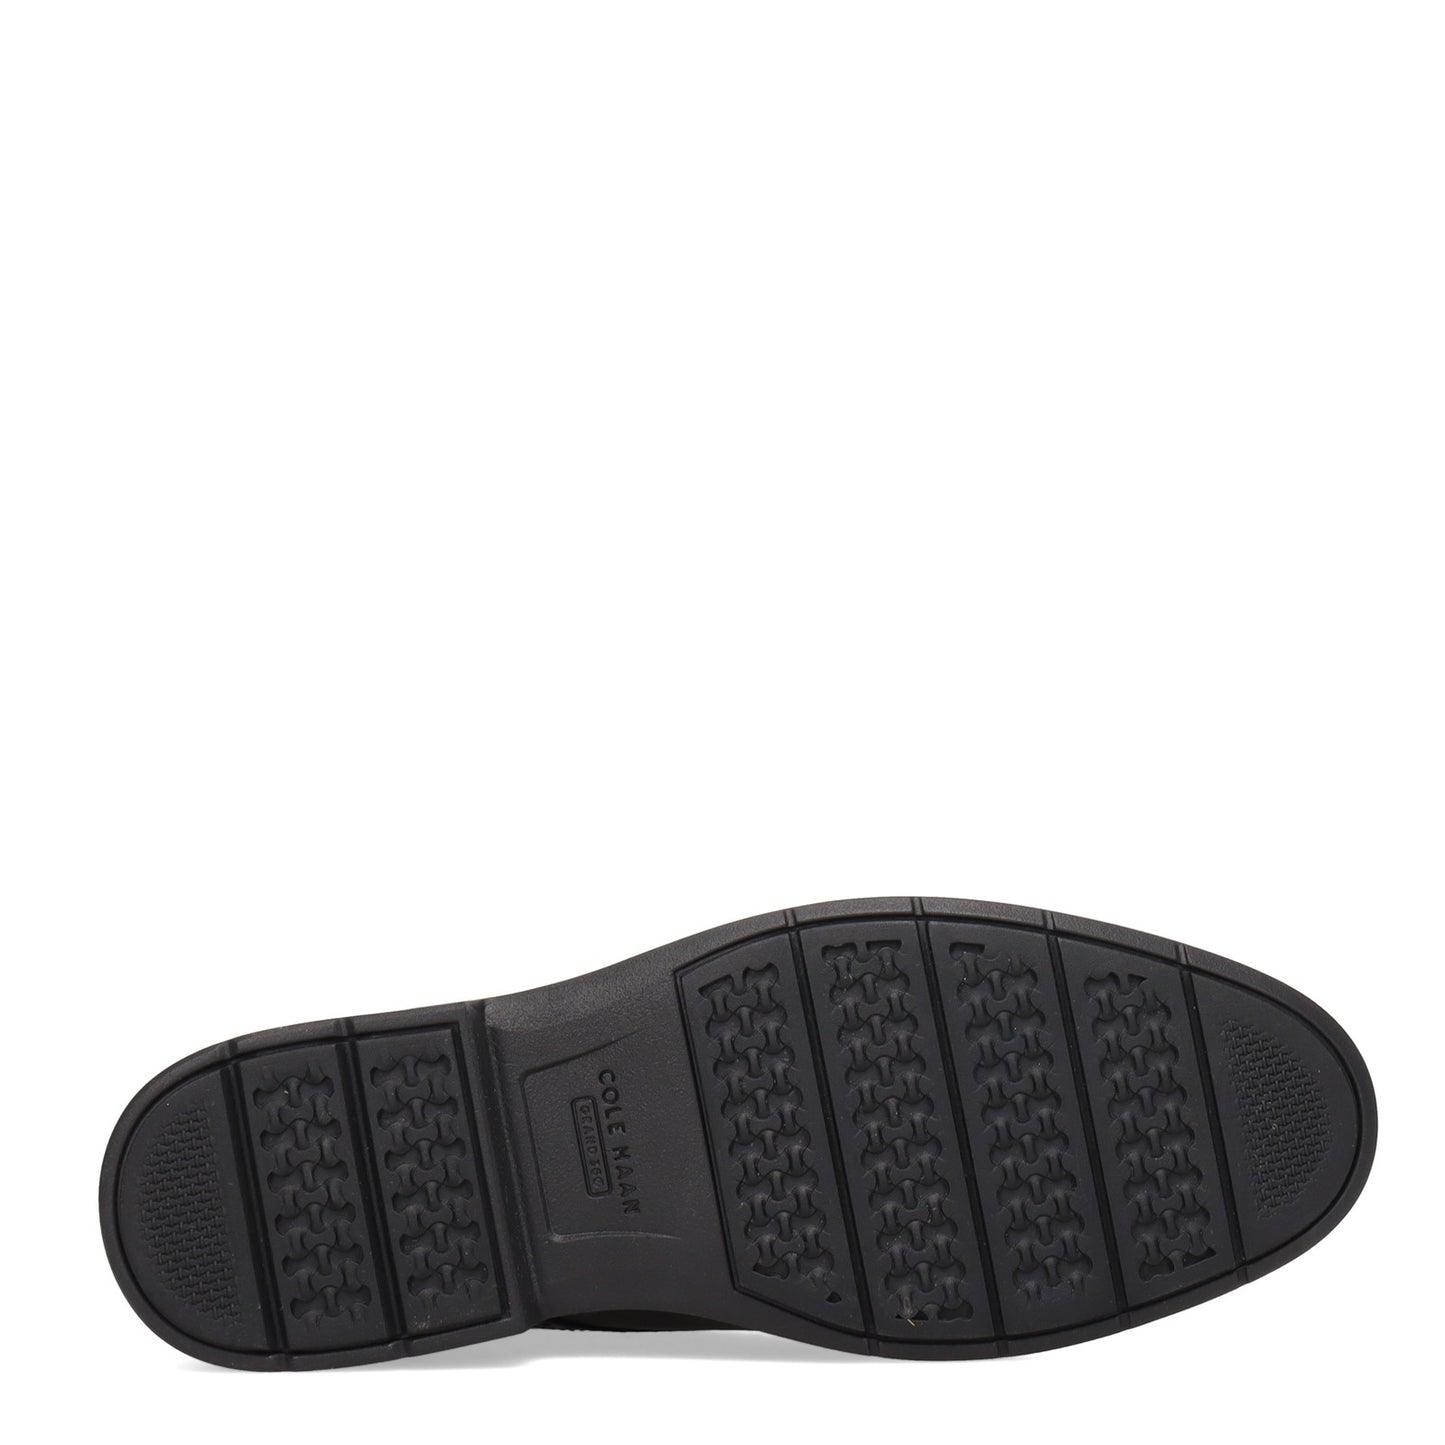 Peltz Shoes  Men's Cole Haan Go-To Plain Toe Oxford BLACK C34600